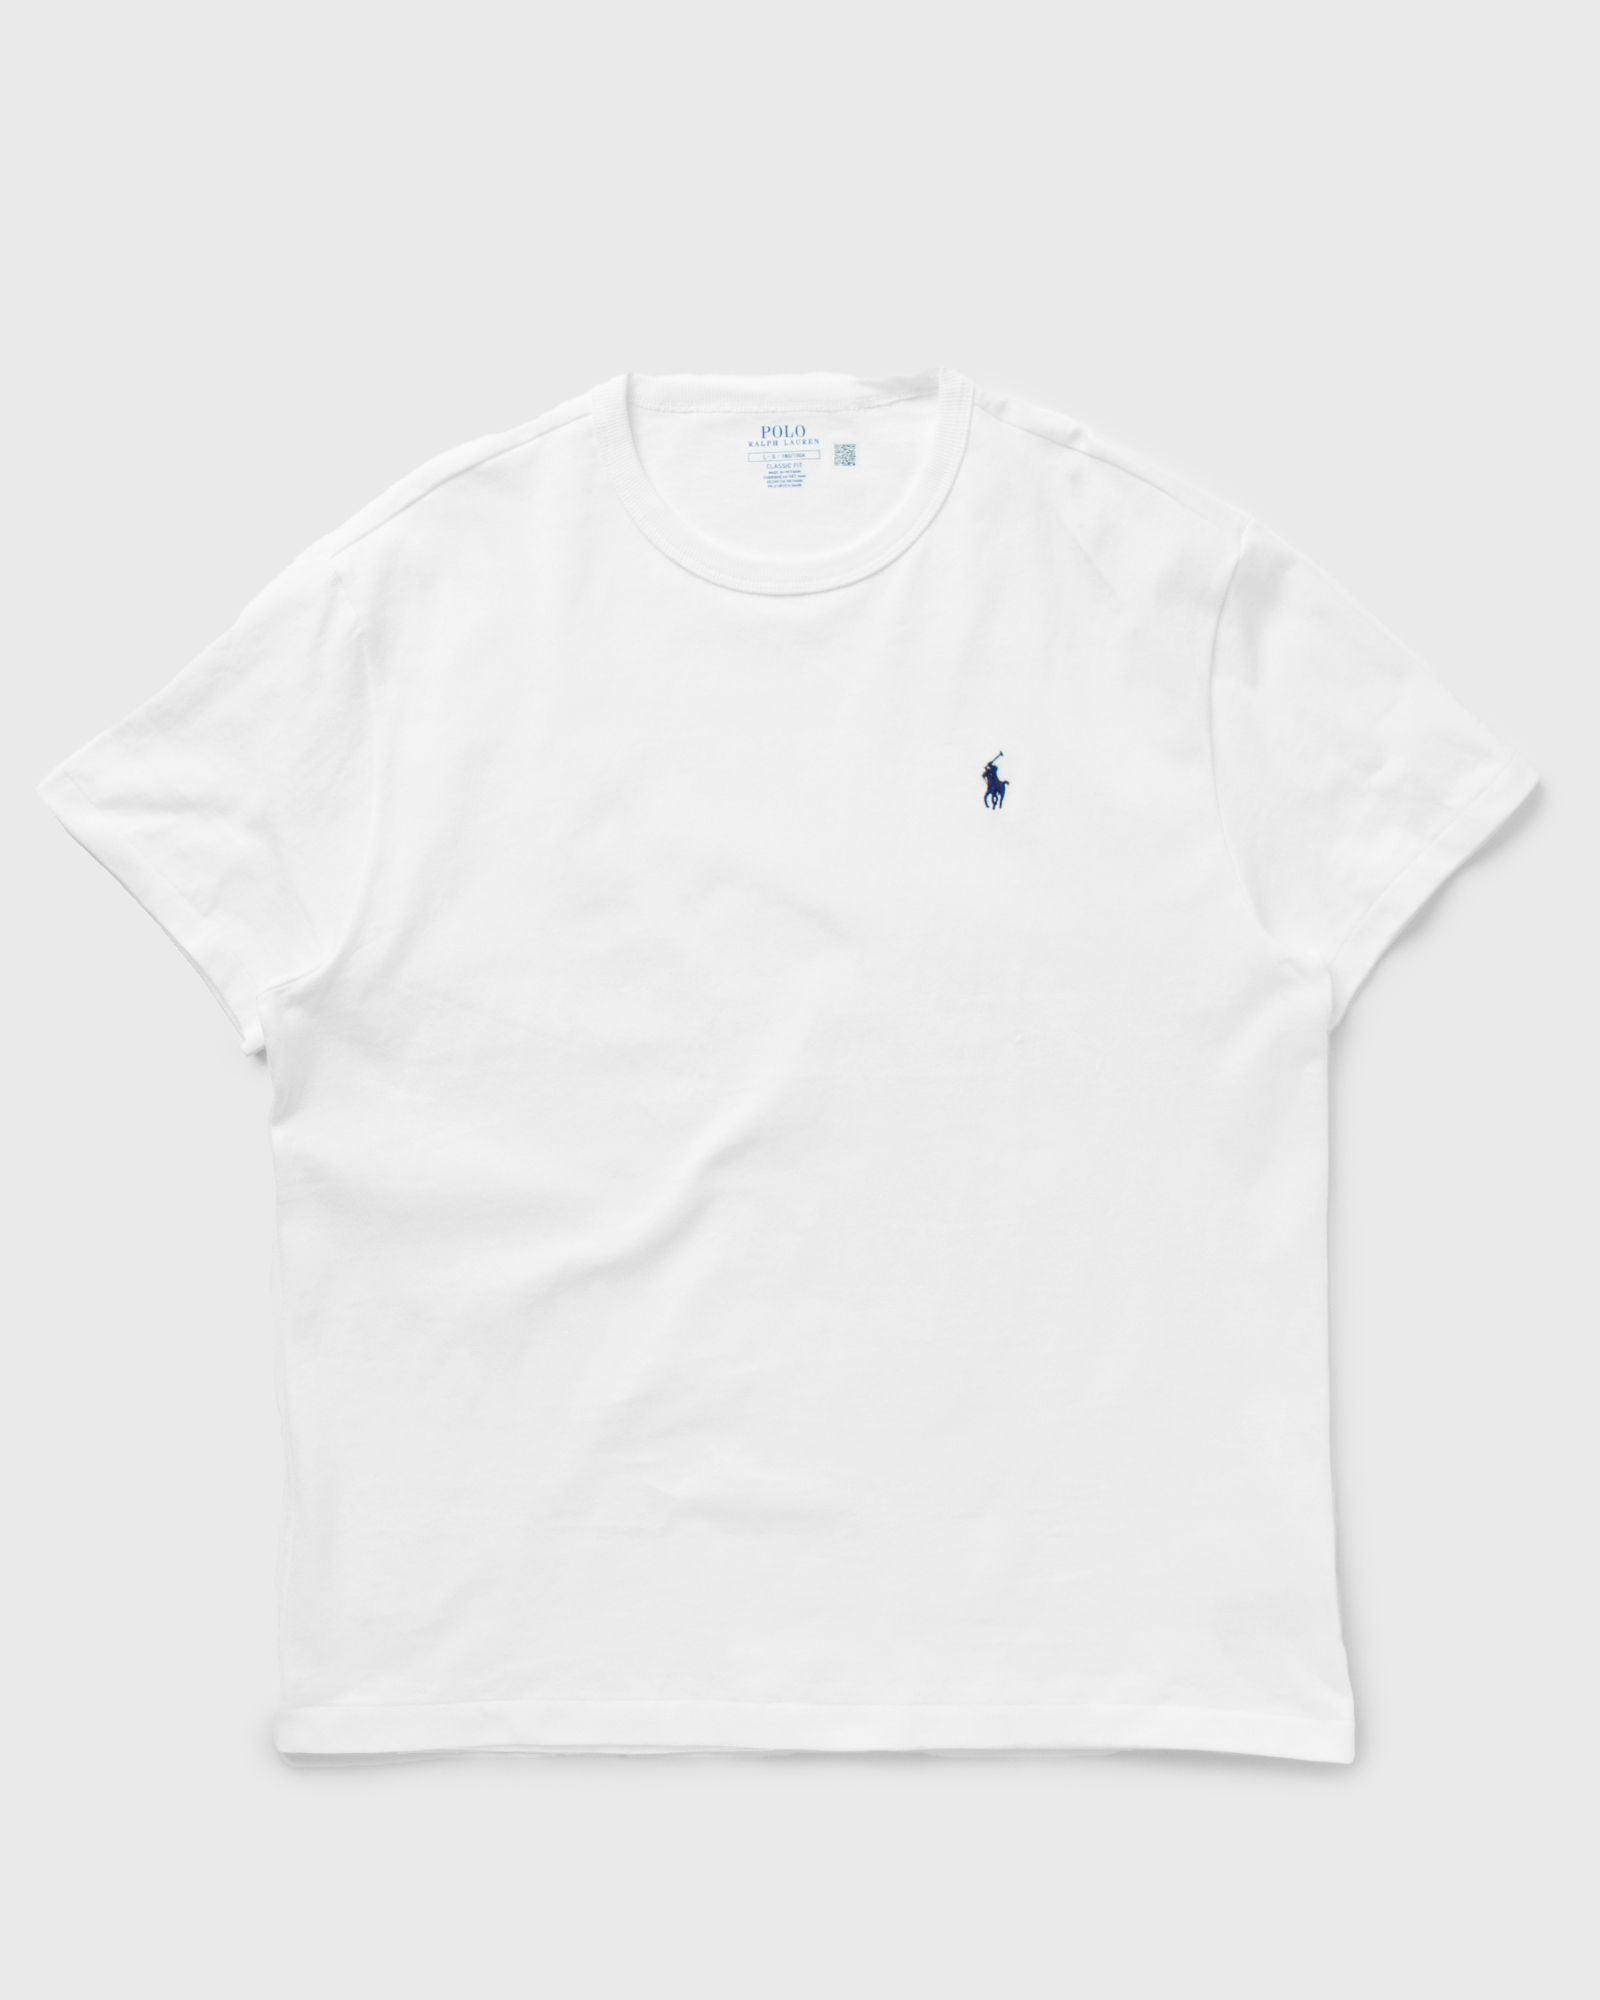 Polo Ralph Lauren - short sleeve-tee men shortsleeves white in größe:xxl